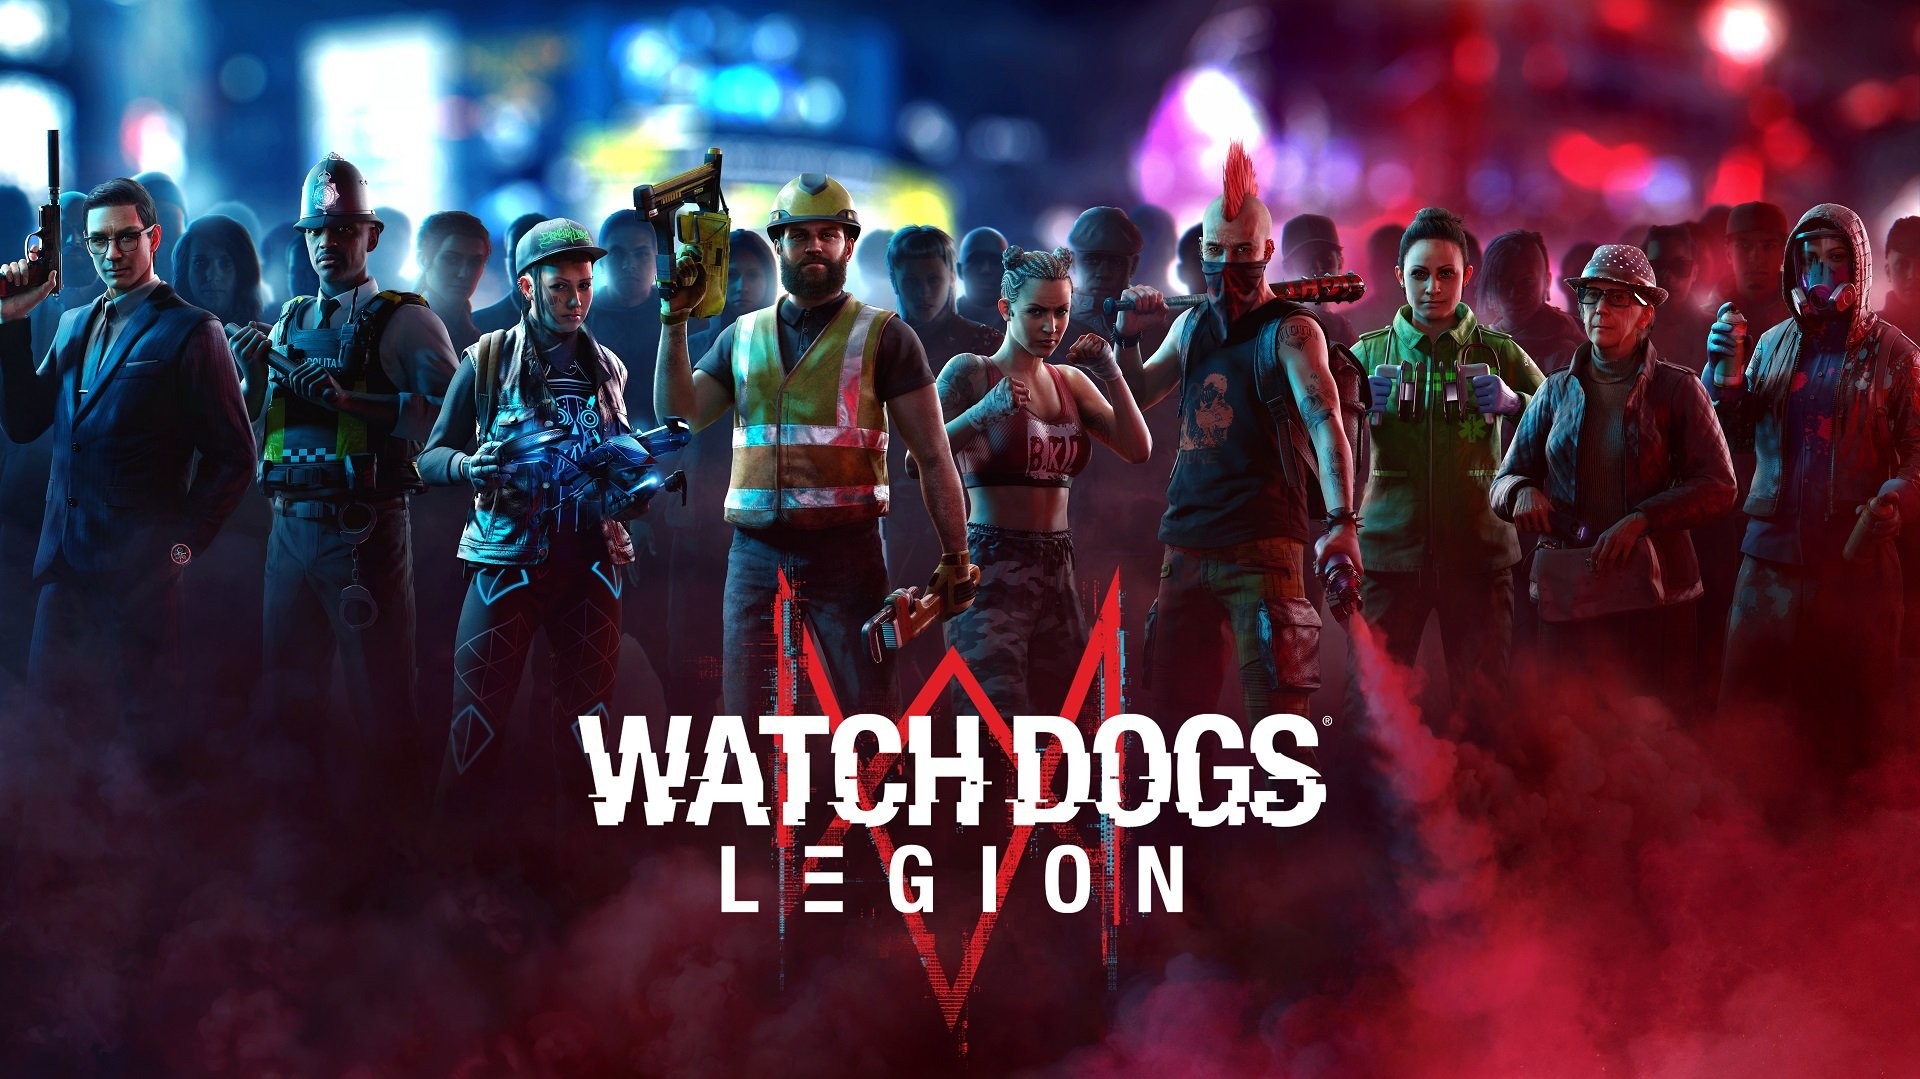 Watch Dogs: Legion ปล่อยอัปเดตใหม่ เพิ่มภารกิจ, โหมด Co-op และอื่น ๆ อีกมากมาย